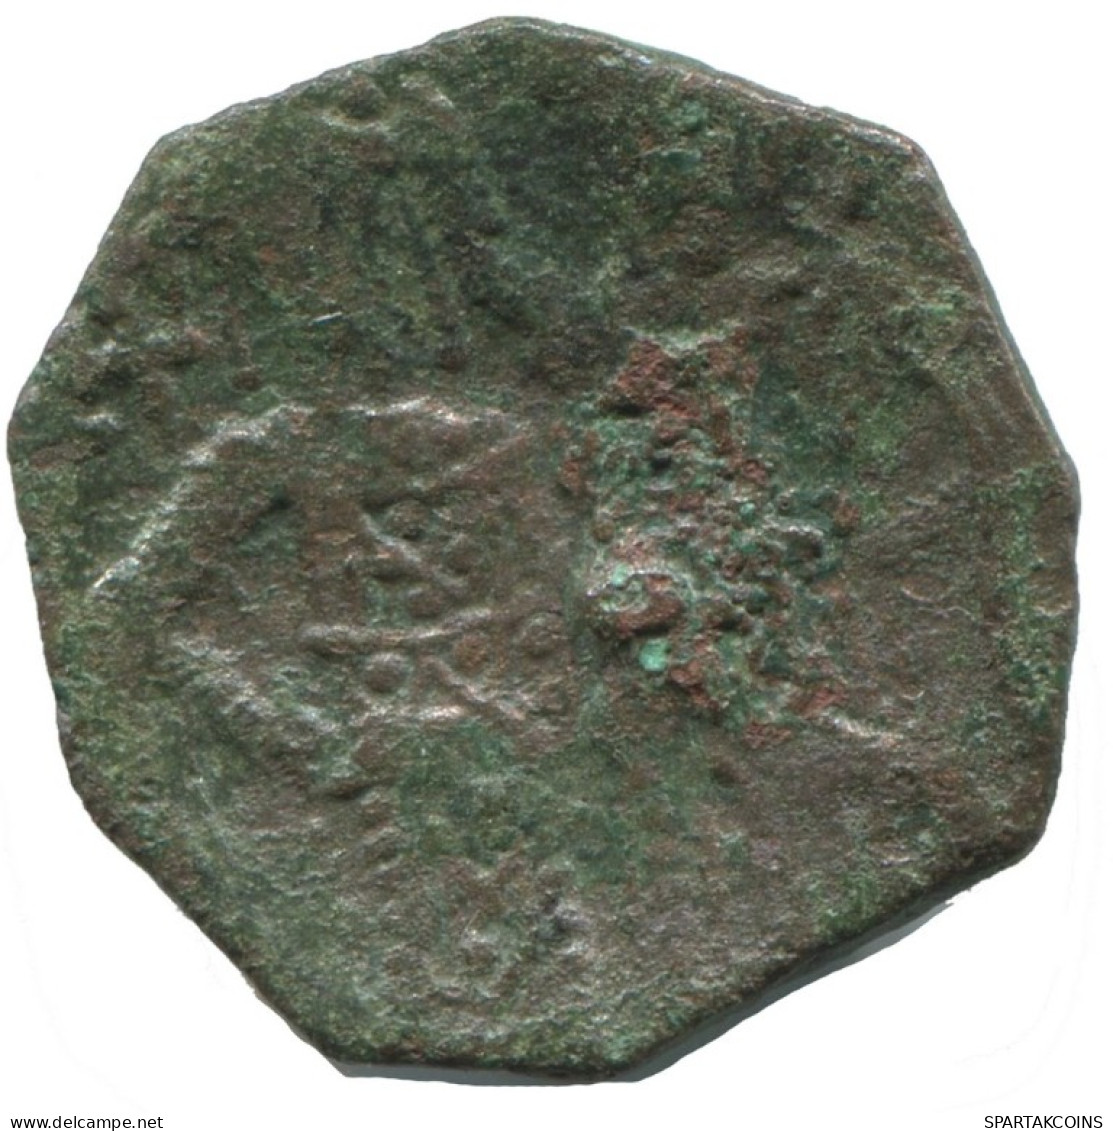 TRACHY BYZANTINISCHE Münze  EMPIRE Antike Authentisch Münze 1.3g/15mm #AG706.4.D.A - Byzantium